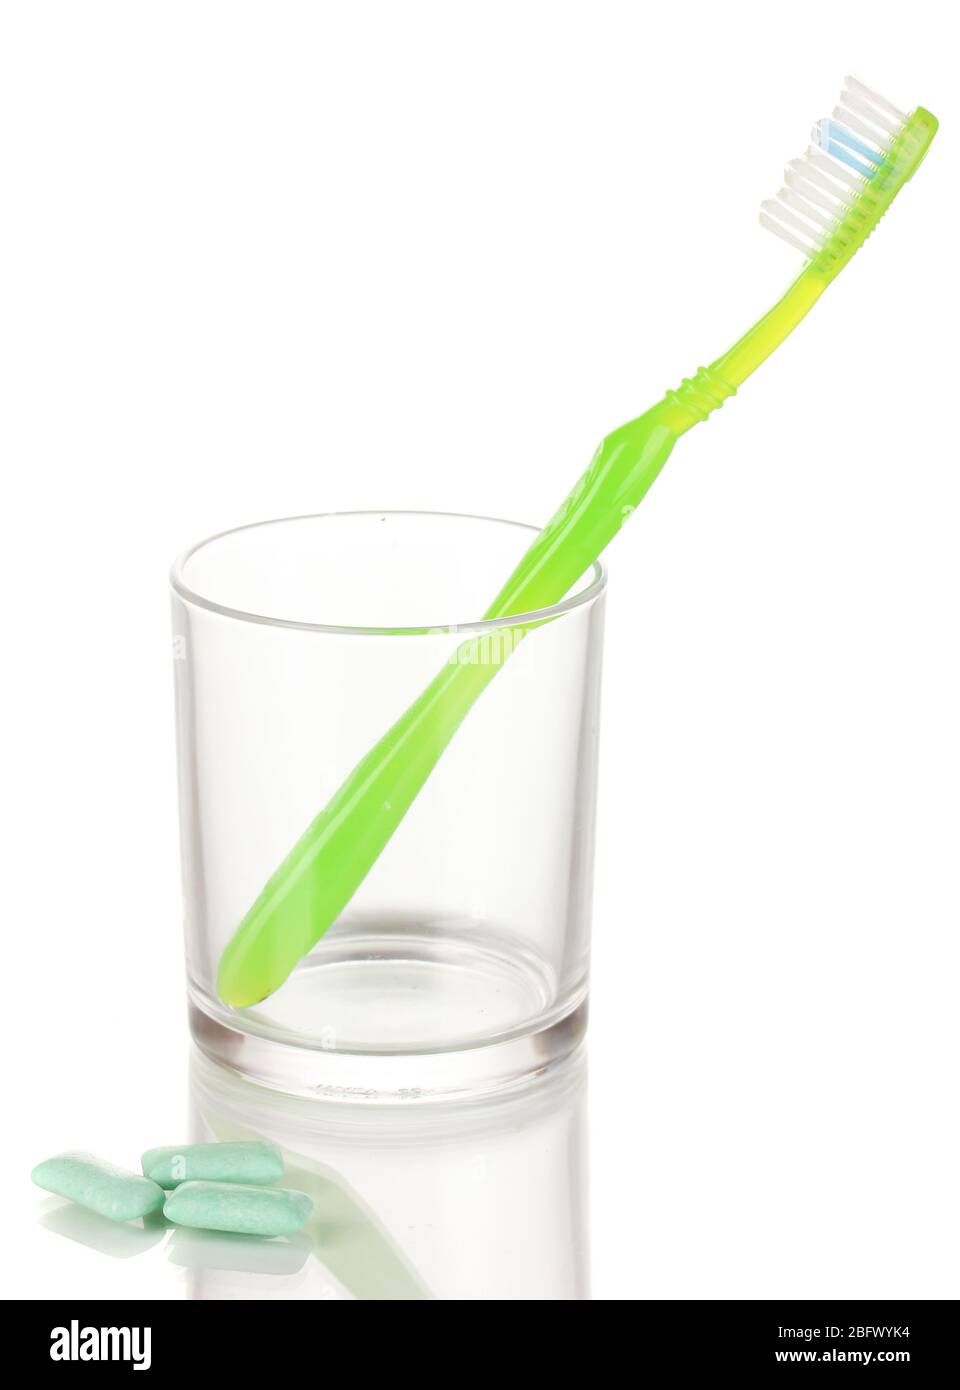 Zahnbürste aus Glas und Kaugummi isoliert auf weiß Stockfotografie - Alamy